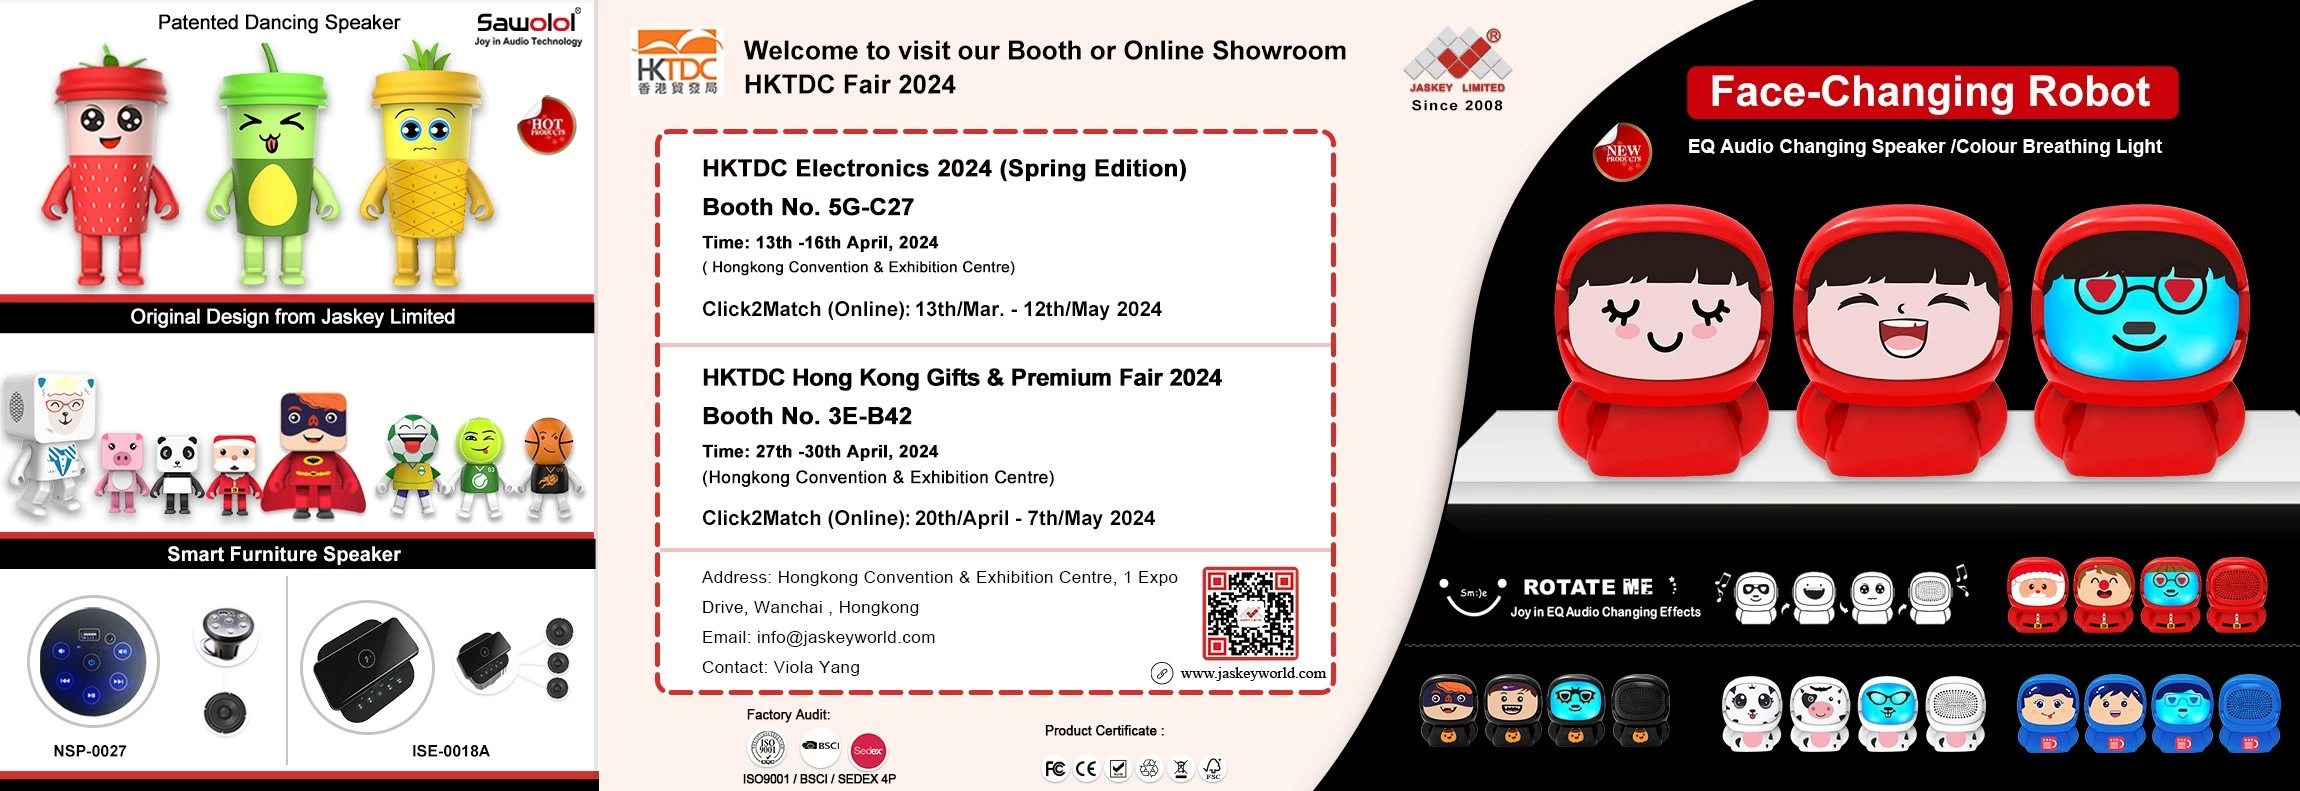 HKTDC Electronics 2024 (Edición de Primavera) y HKTDC Hong Kong Gifts & Premium Fair 2024